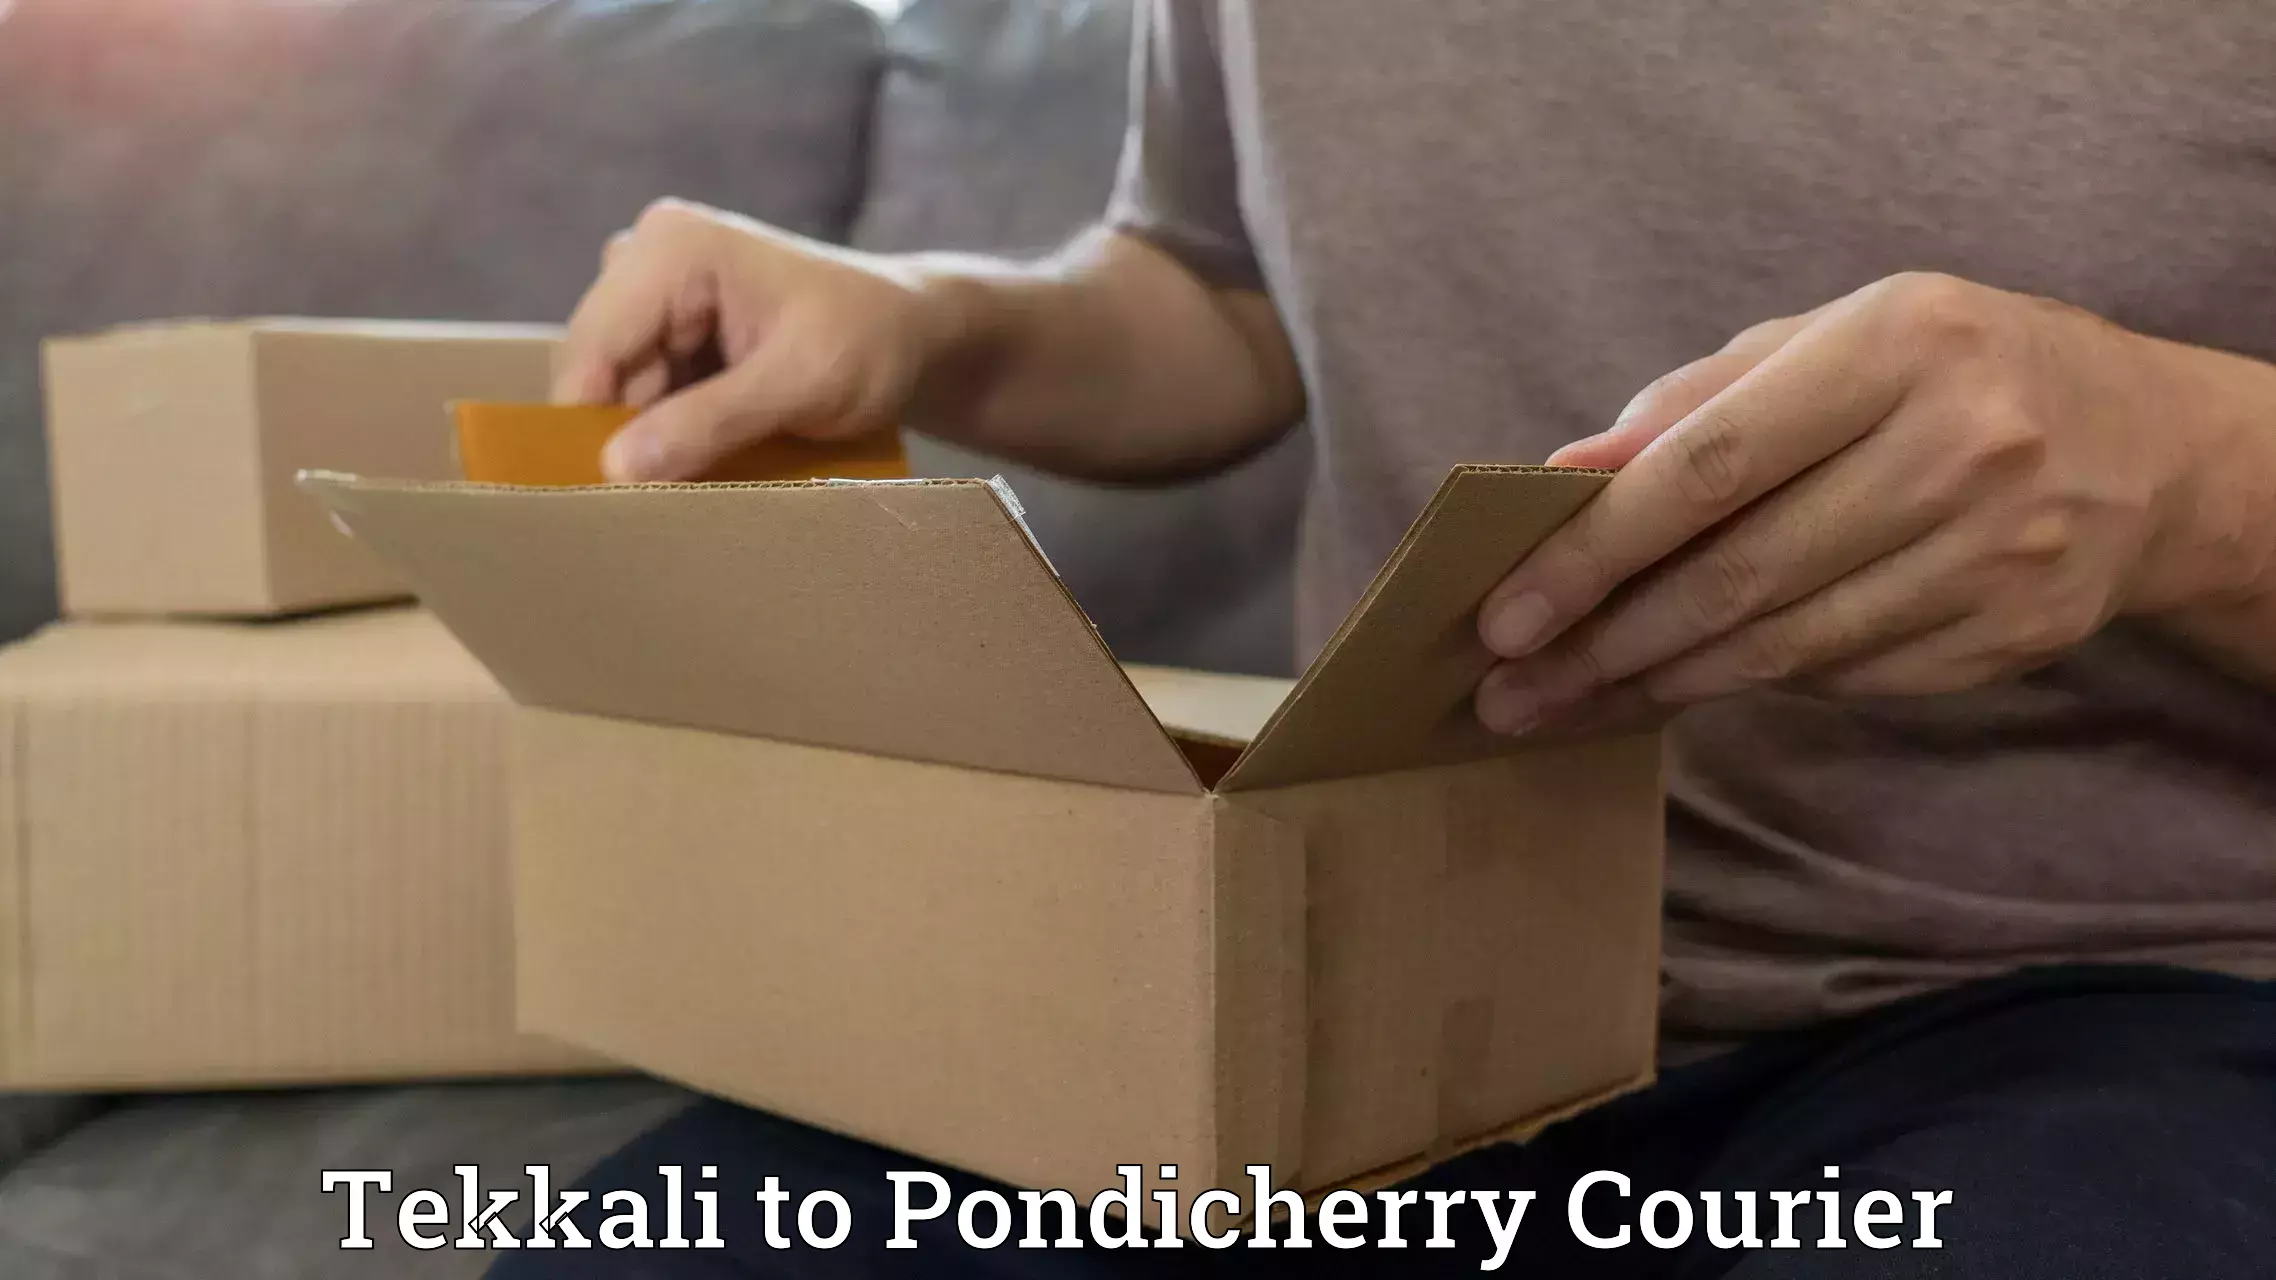 International courier rates Tekkali to Pondicherry